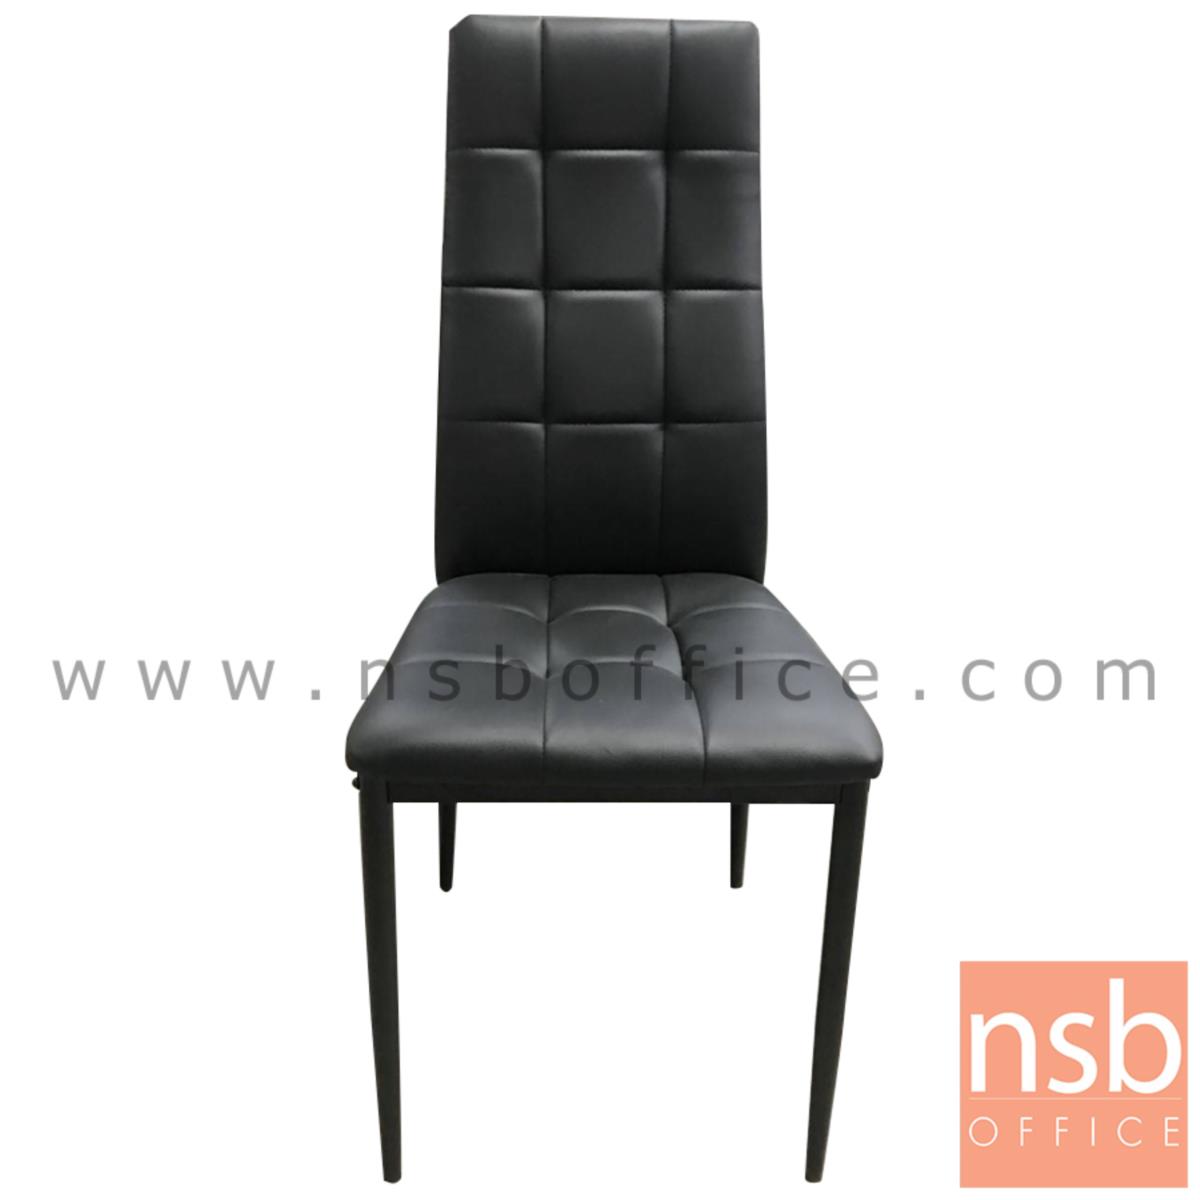 เก้าอี้รับประทานอาหาร หุ้มหนังสีดำ รุ่น Nashville (แนชวิลล์)  ขาเหล็กดำ